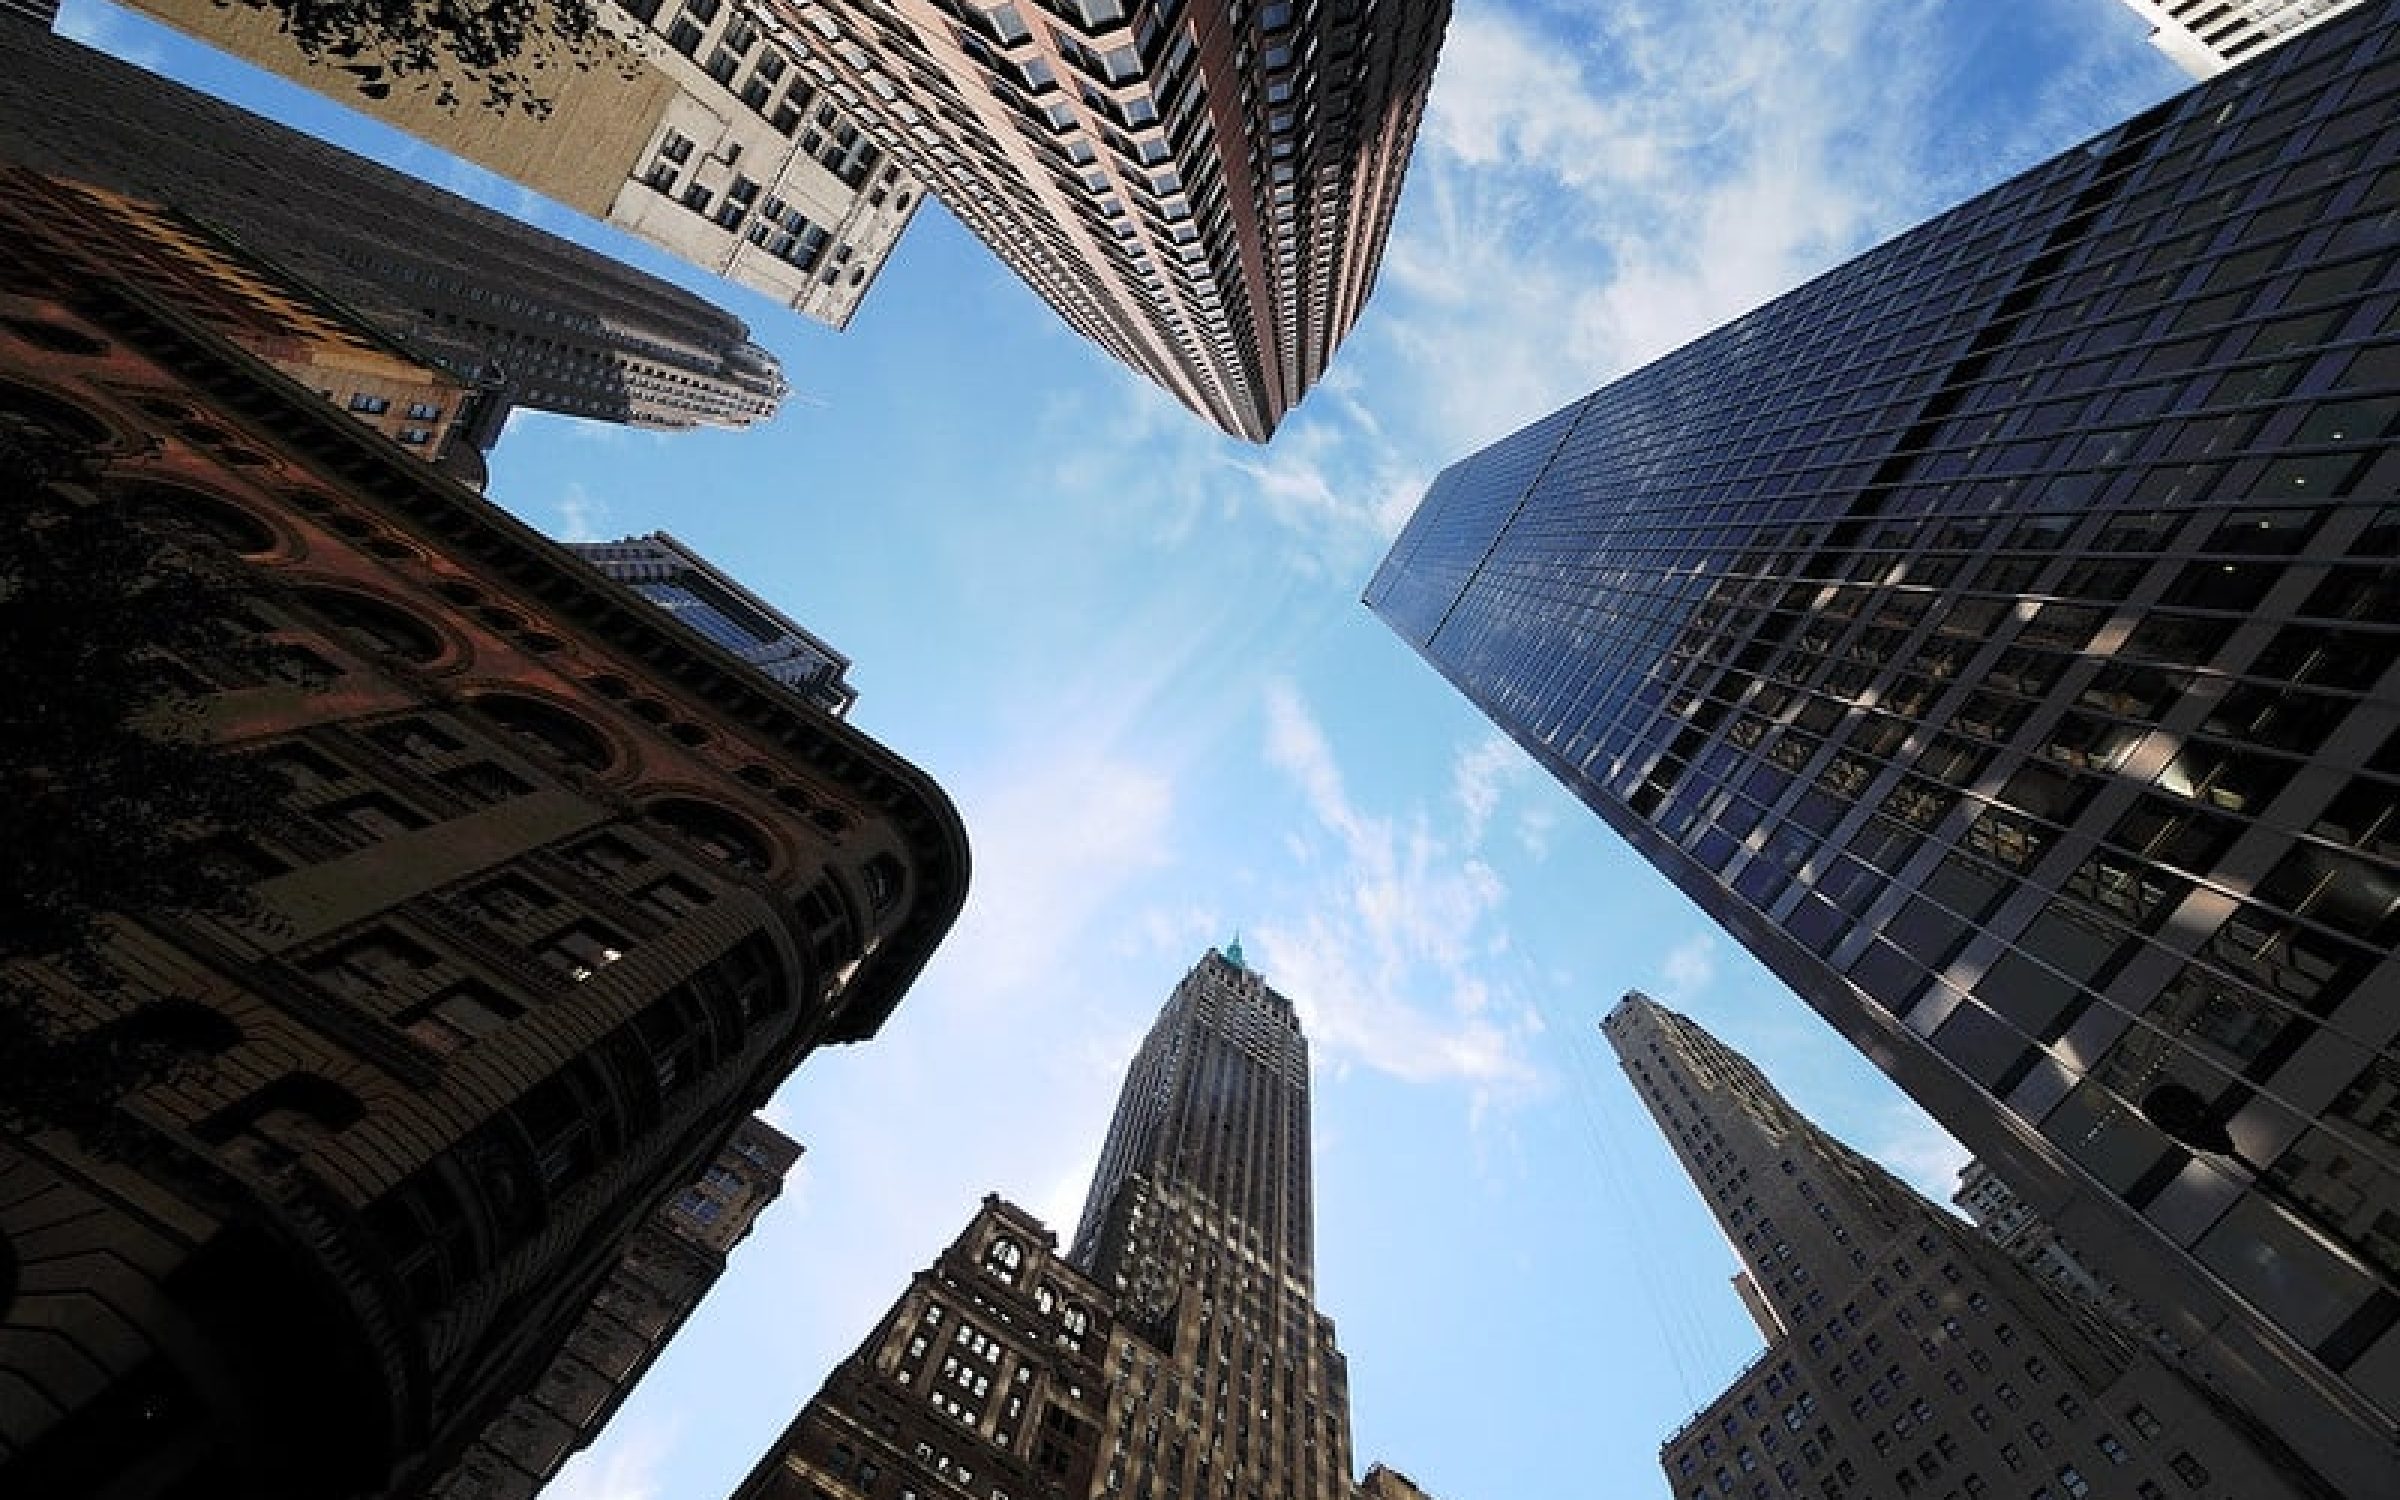 Wall Street, New York, USA (via Flickr/ Christian Sarbach)